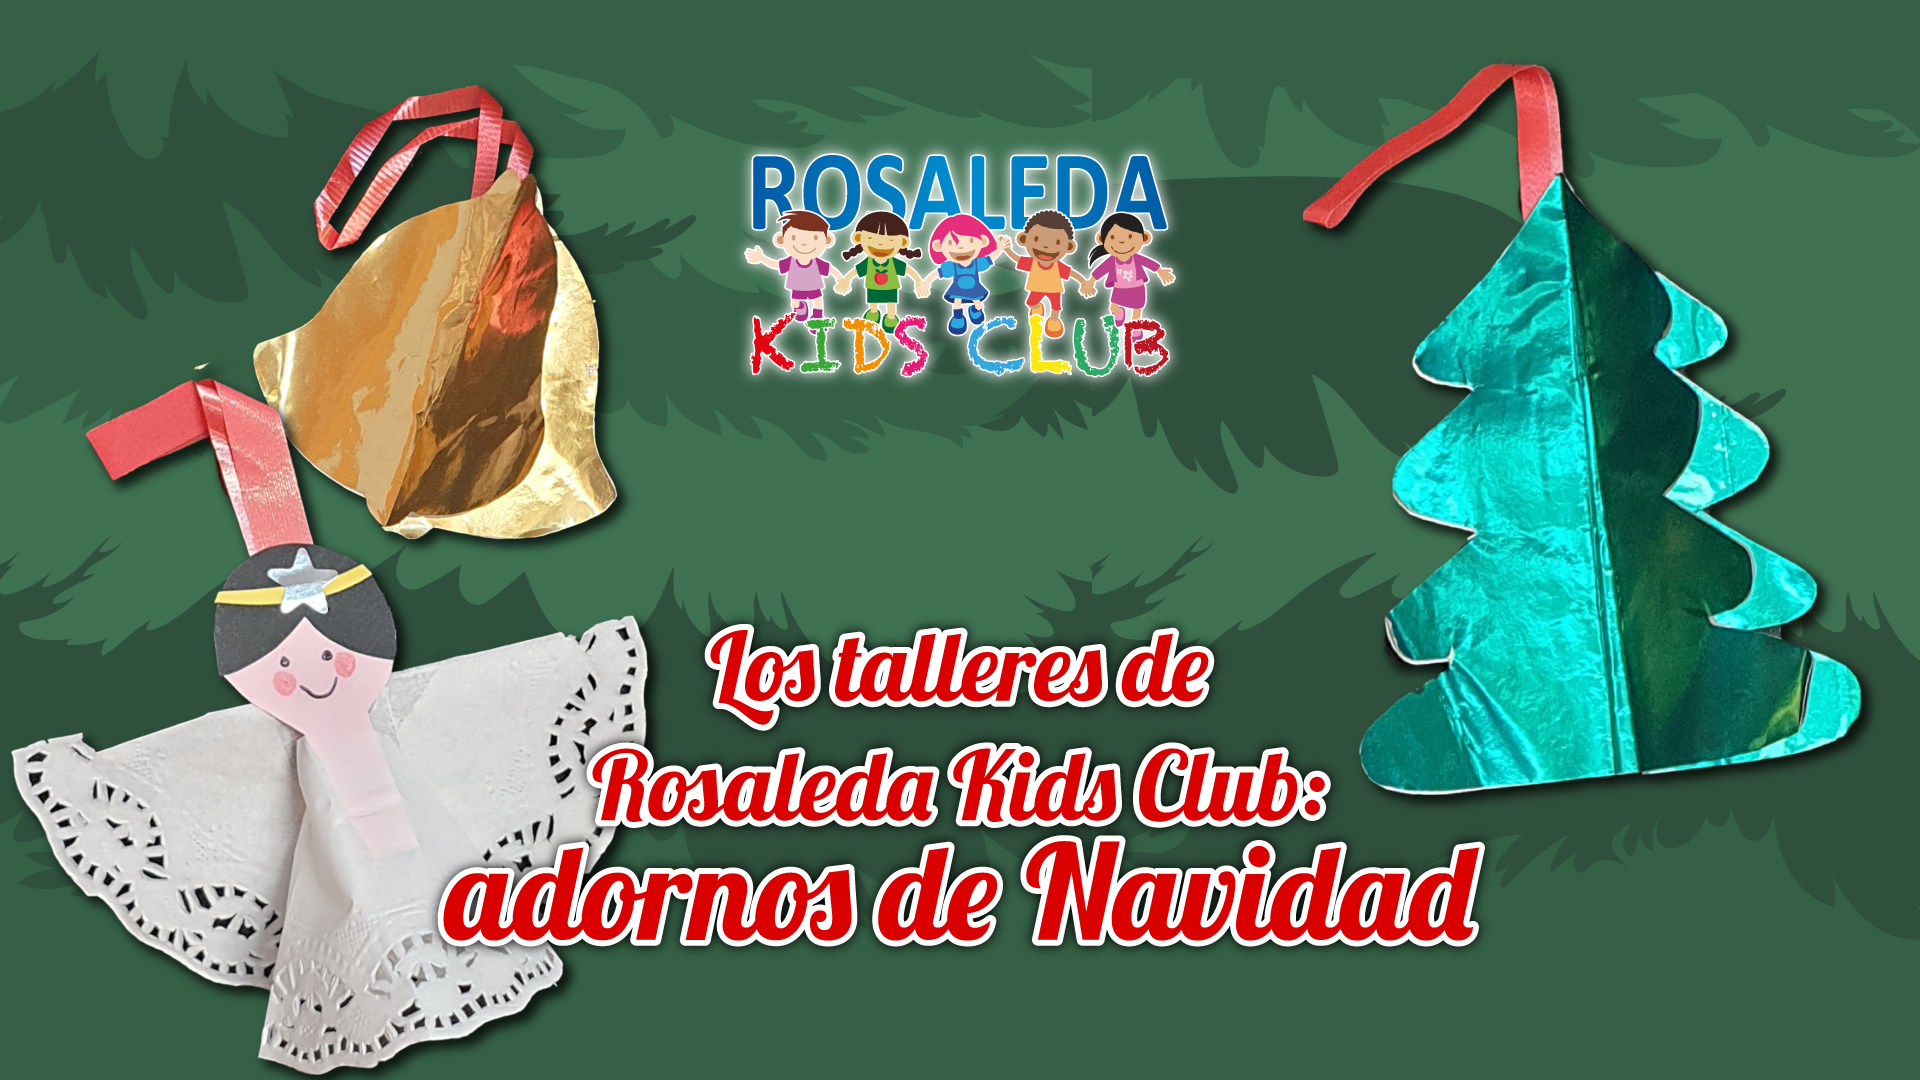 Los talleres de Rosaleda Kids Club: adornos de Navidad